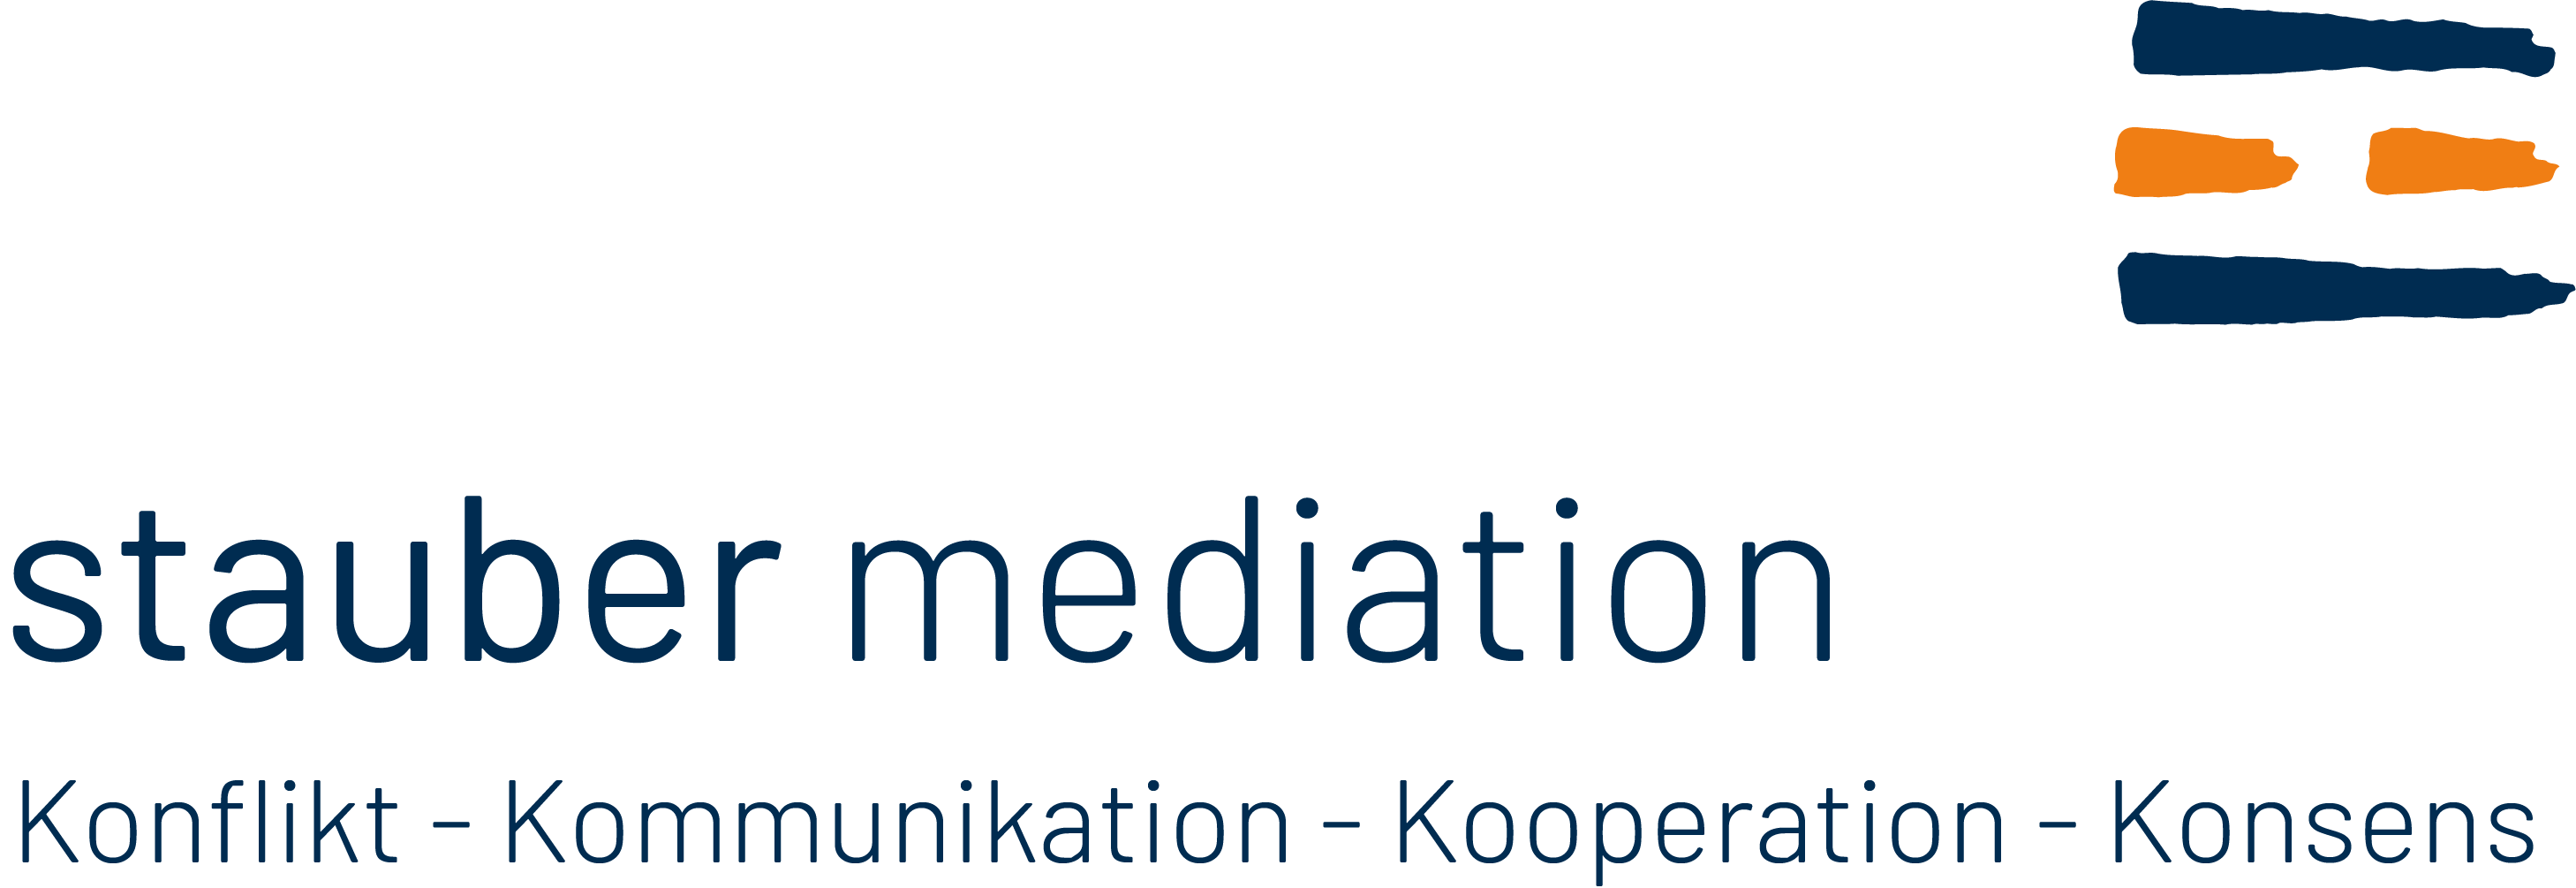 (c) Stauber-mediation.ch